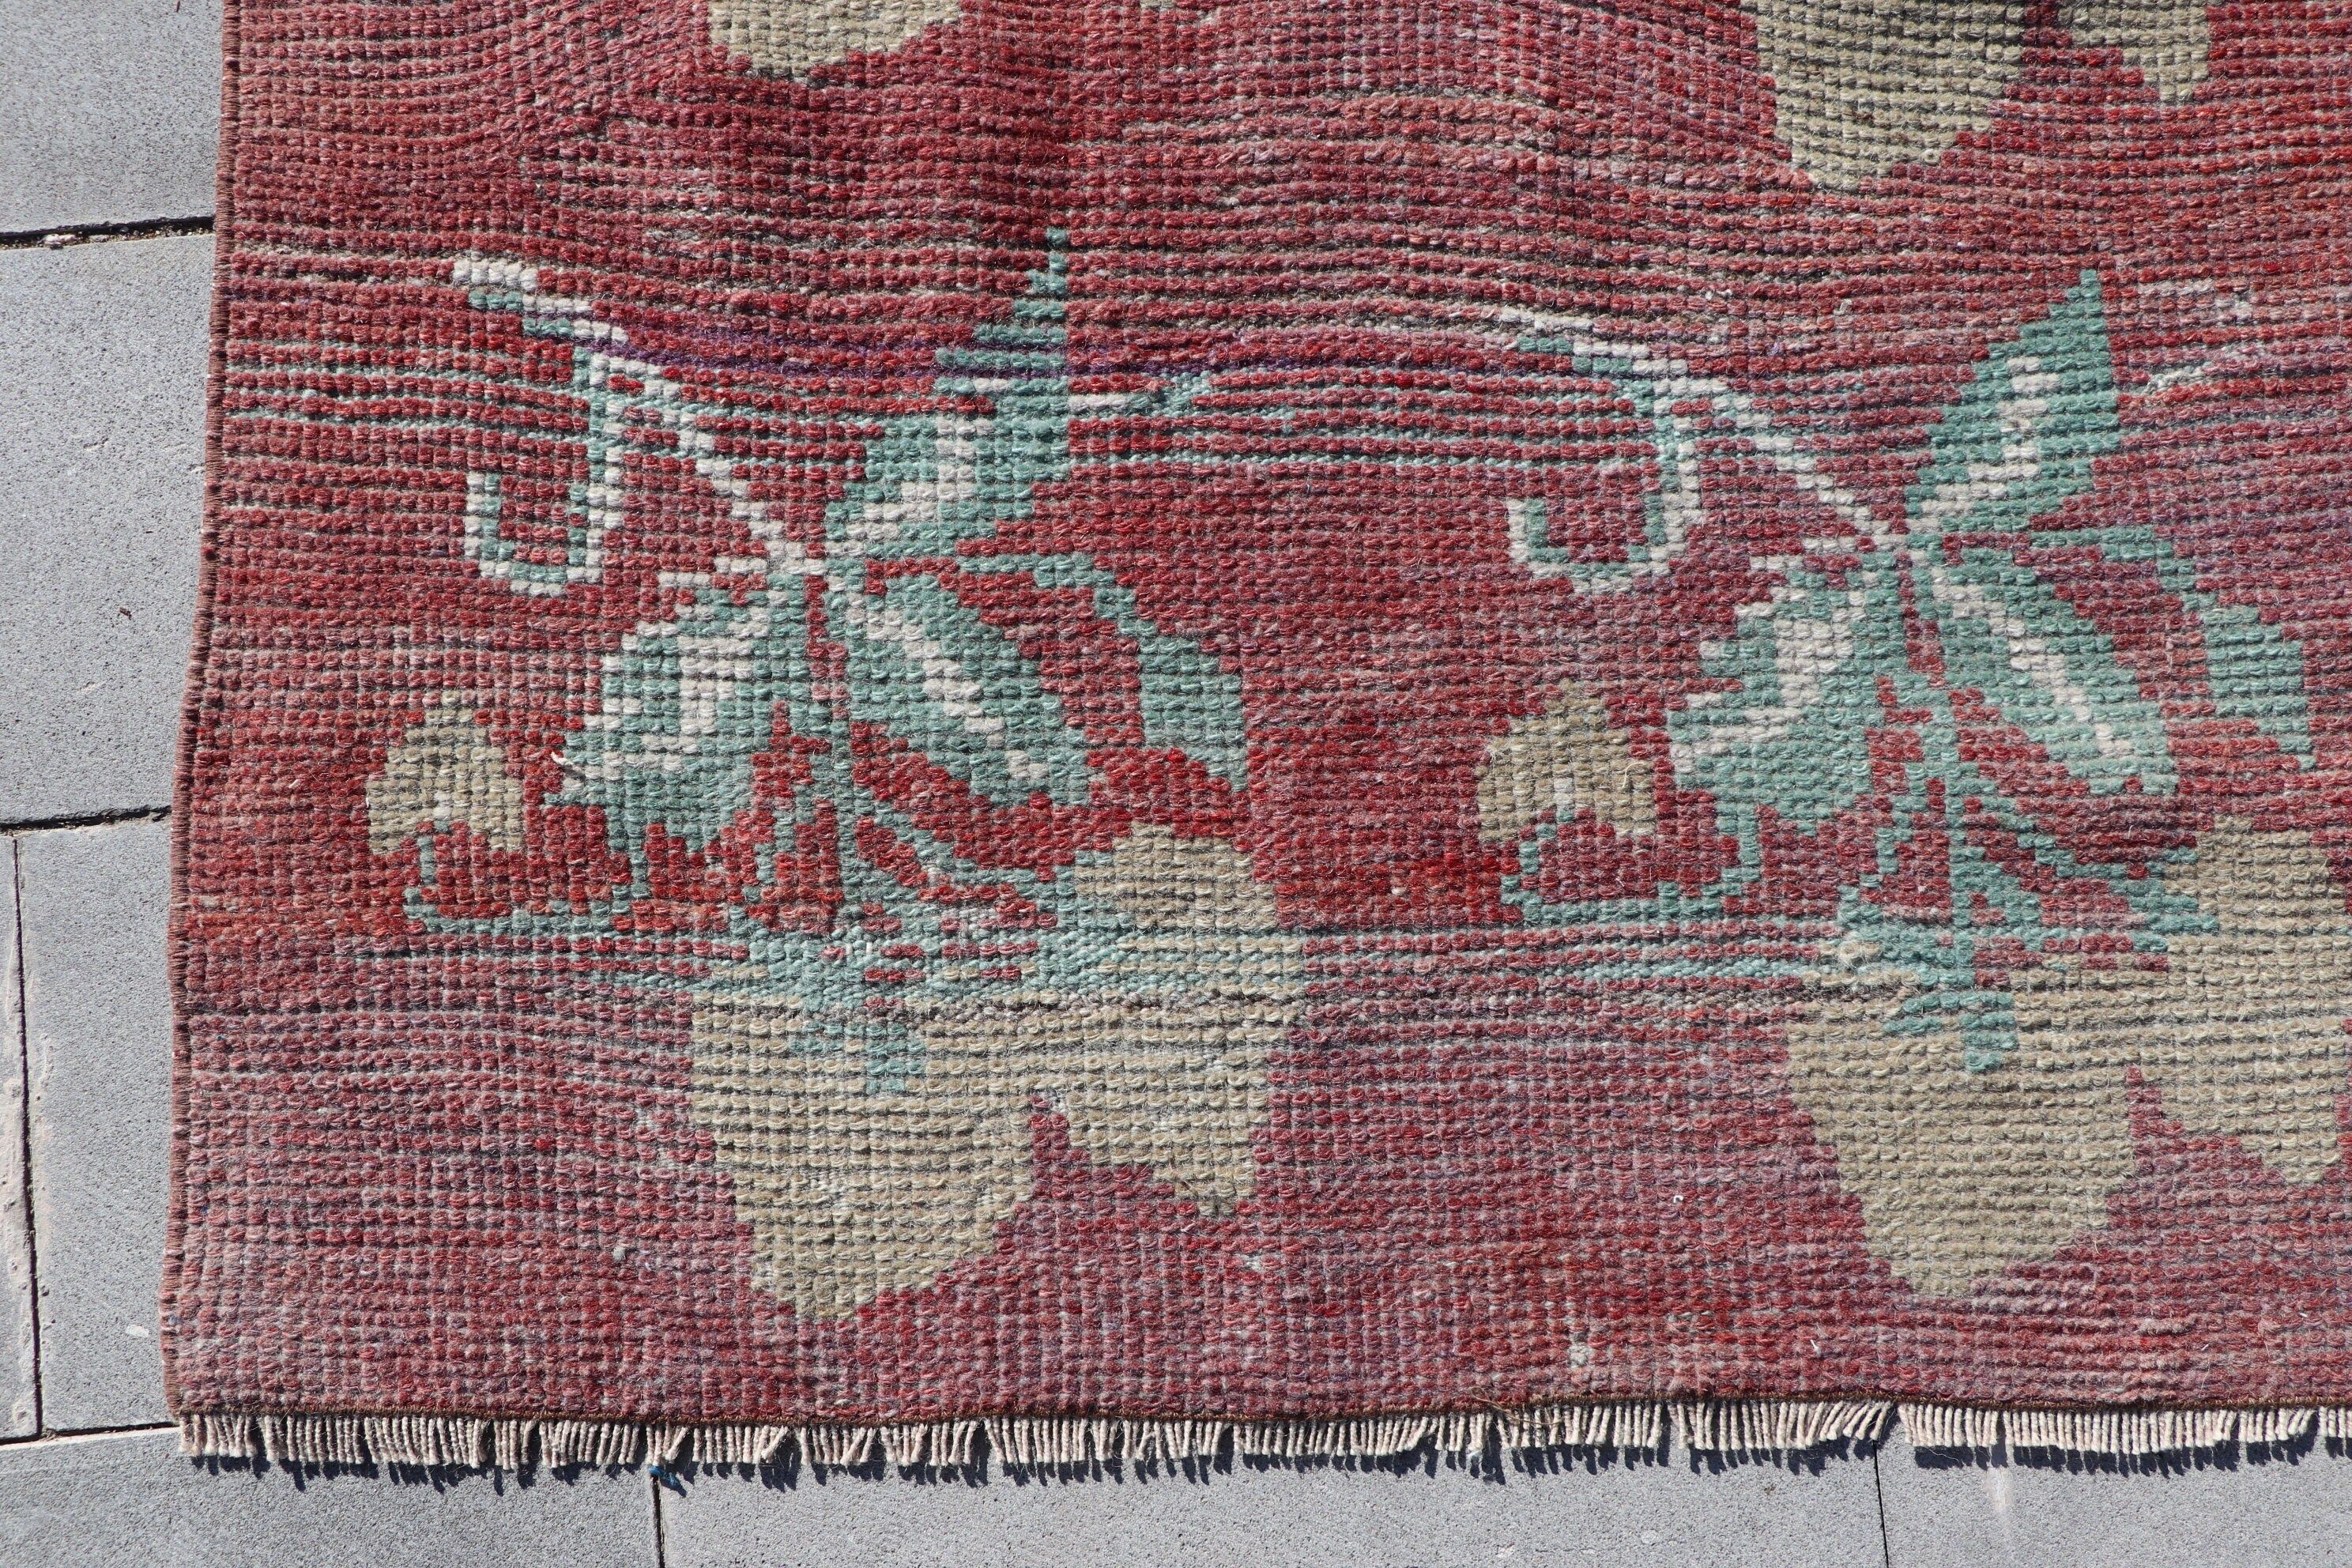 Turkish Rug, Vintage Area Rug Rugs, 4.9x7.7 ft Area Rug, Oriental Rugs, Rugs for Indoor, Red Bedroom Rugs, Vintage Rug